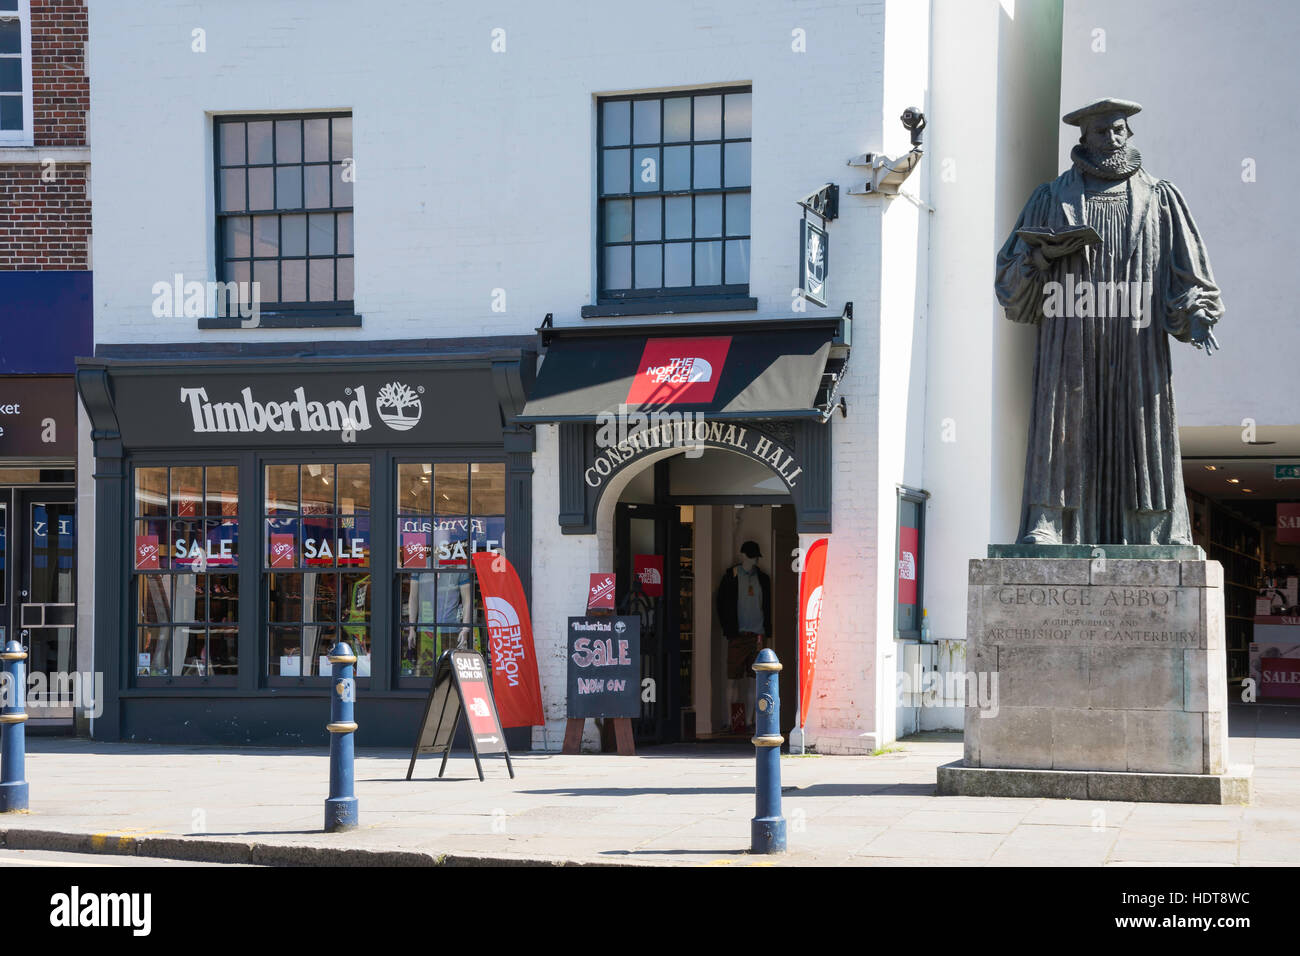 Timberland store e Arcivescovo George Abbot statua, High Street, Guildford, Surrey, England, Regno Unito Foto Stock